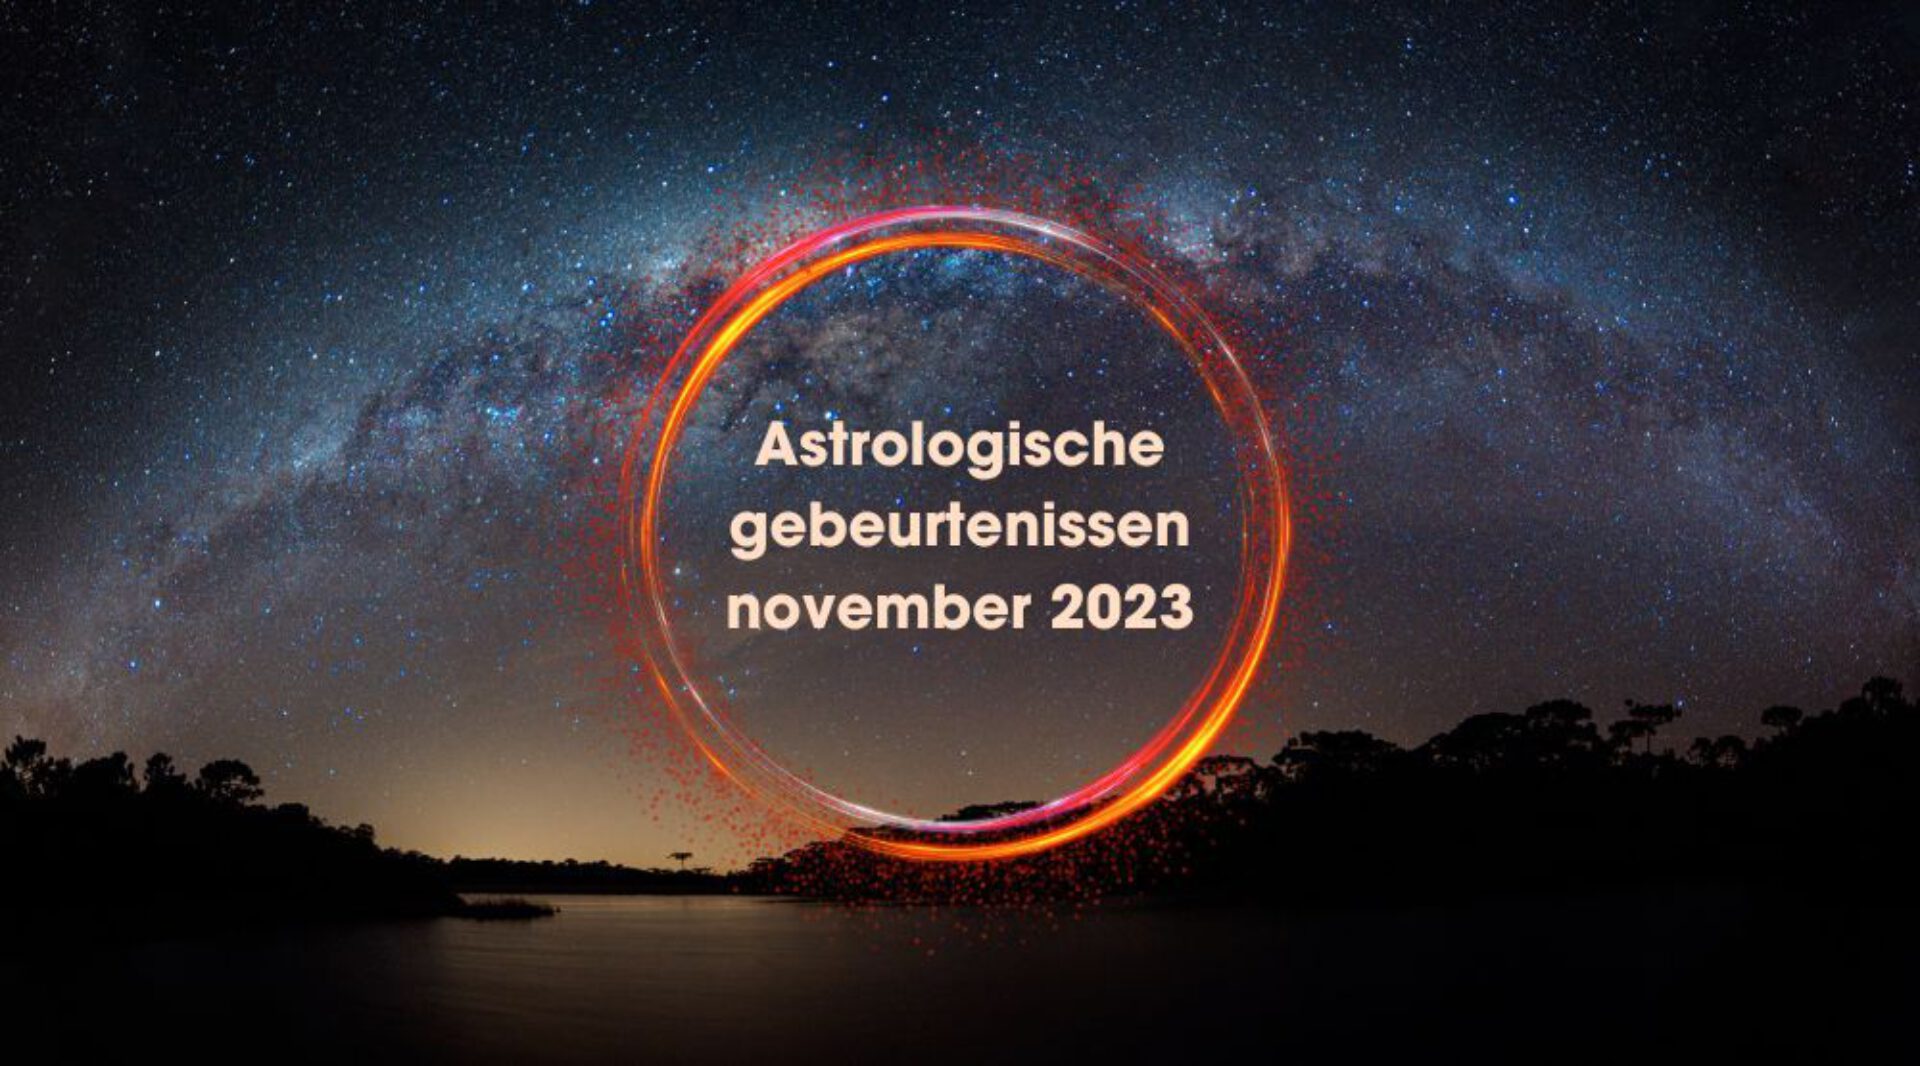 De belangrijkste astrologische gebeurtenissen in november 2023